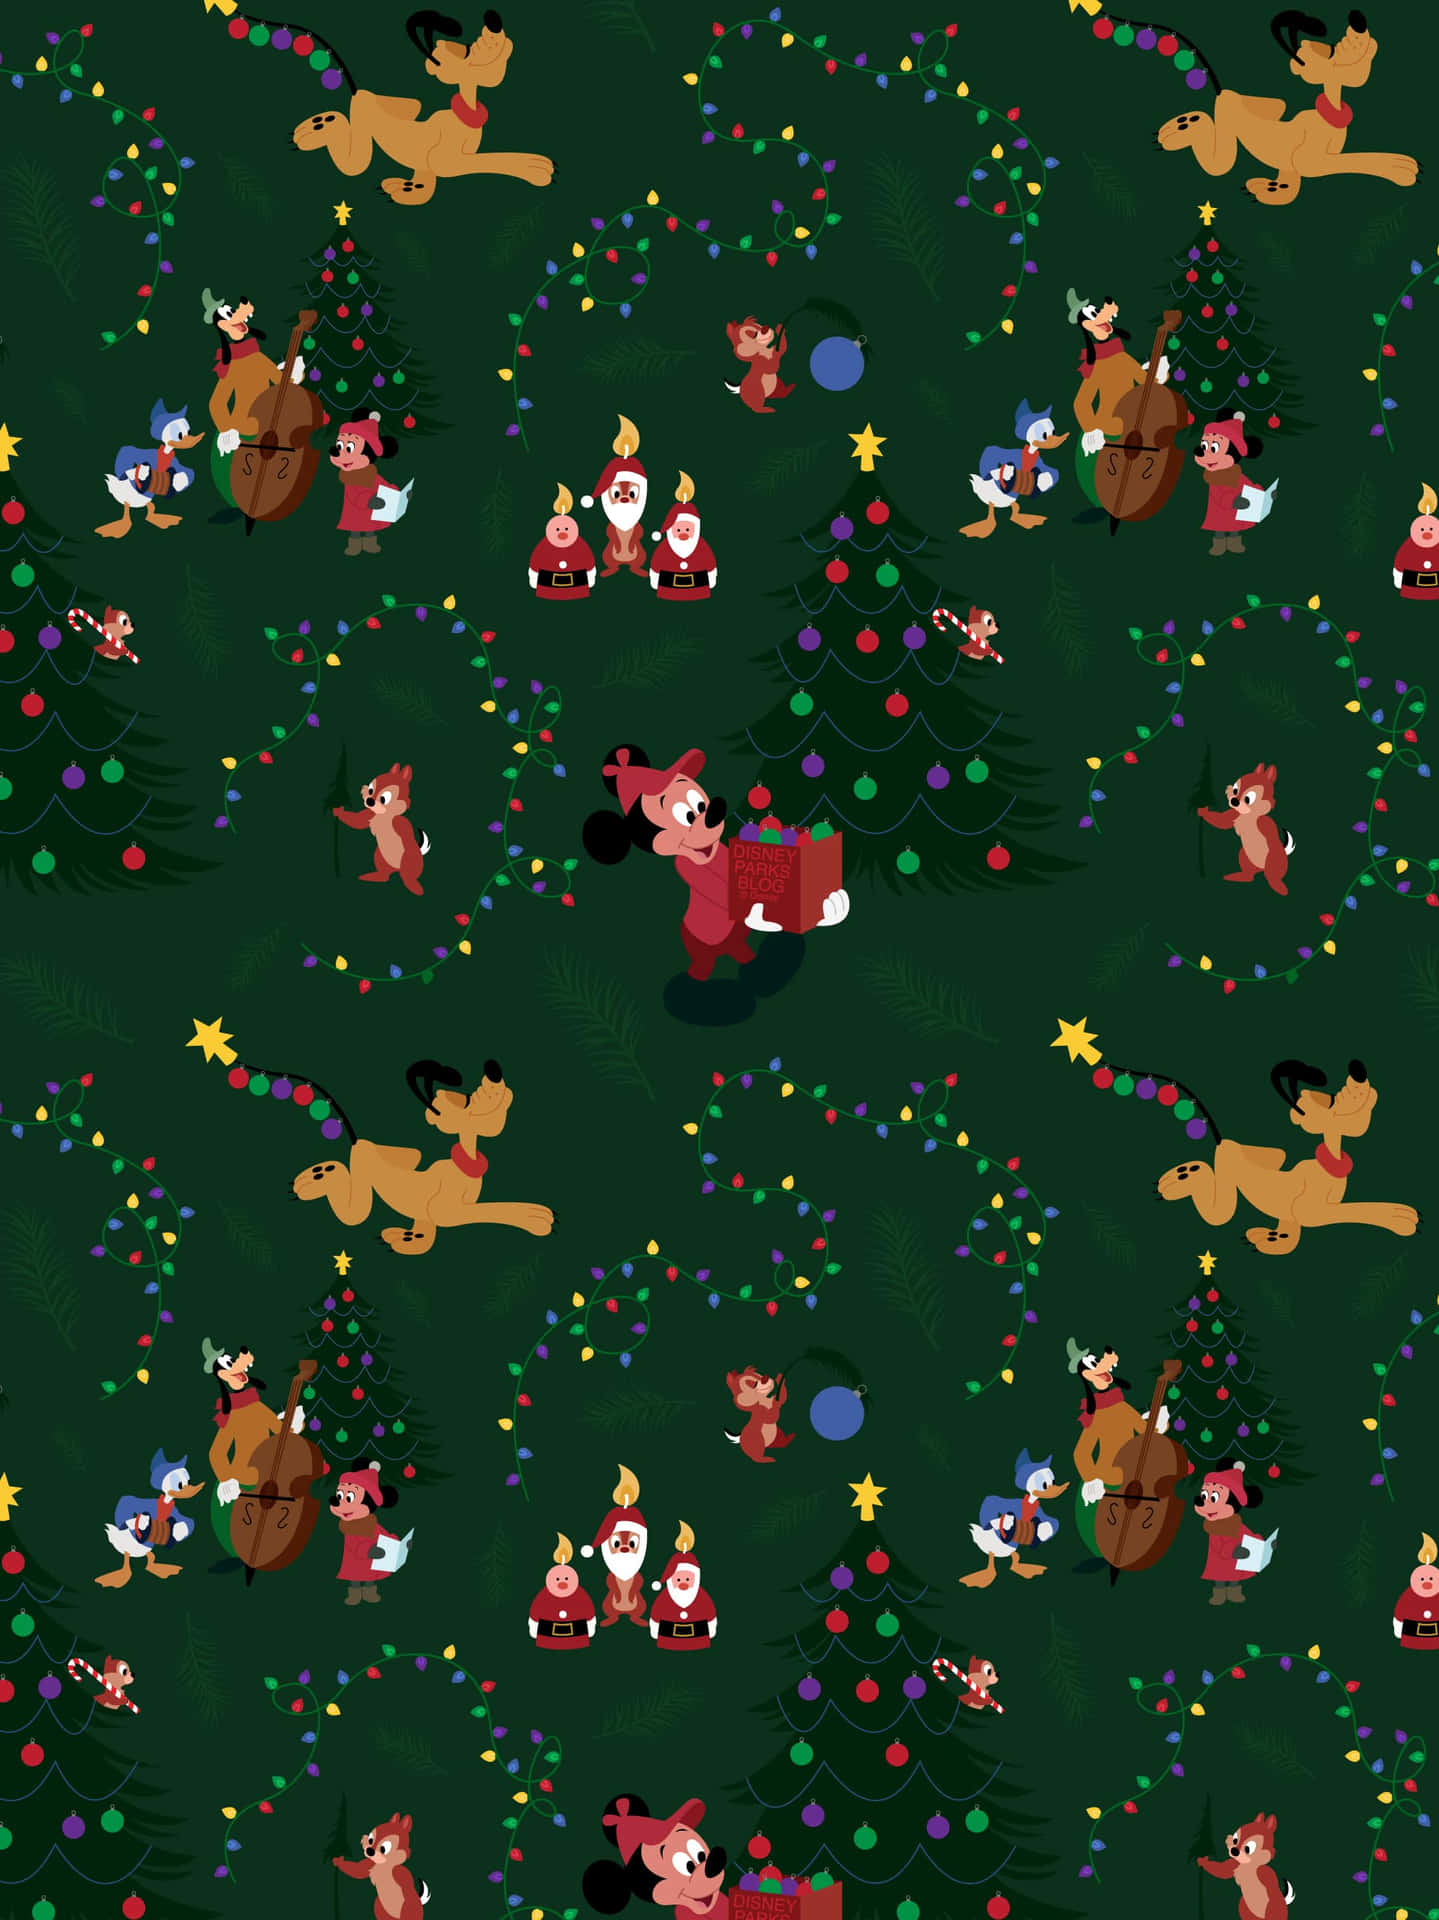 Kommein Weihnachtsstimmung Mit Einem Disney Ipad! Wallpaper